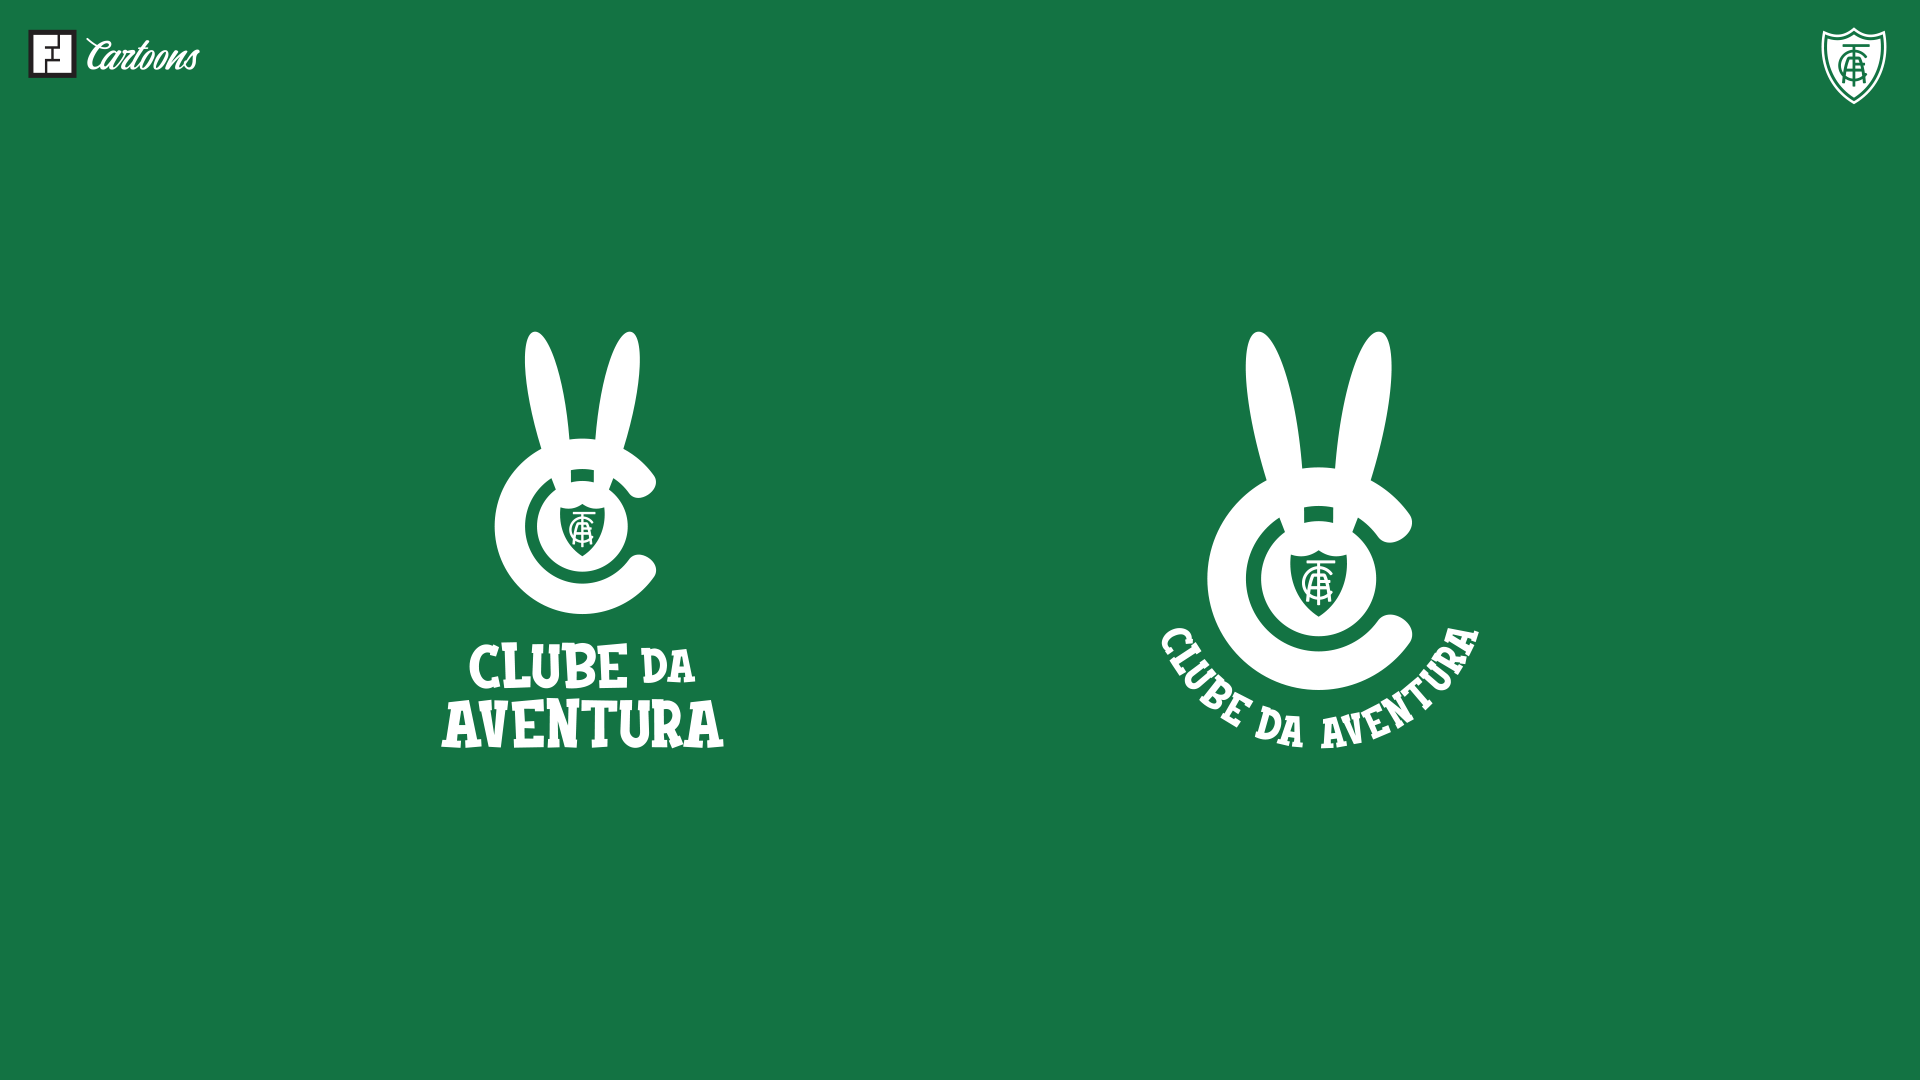 Aplicações "Clube da Aventura".